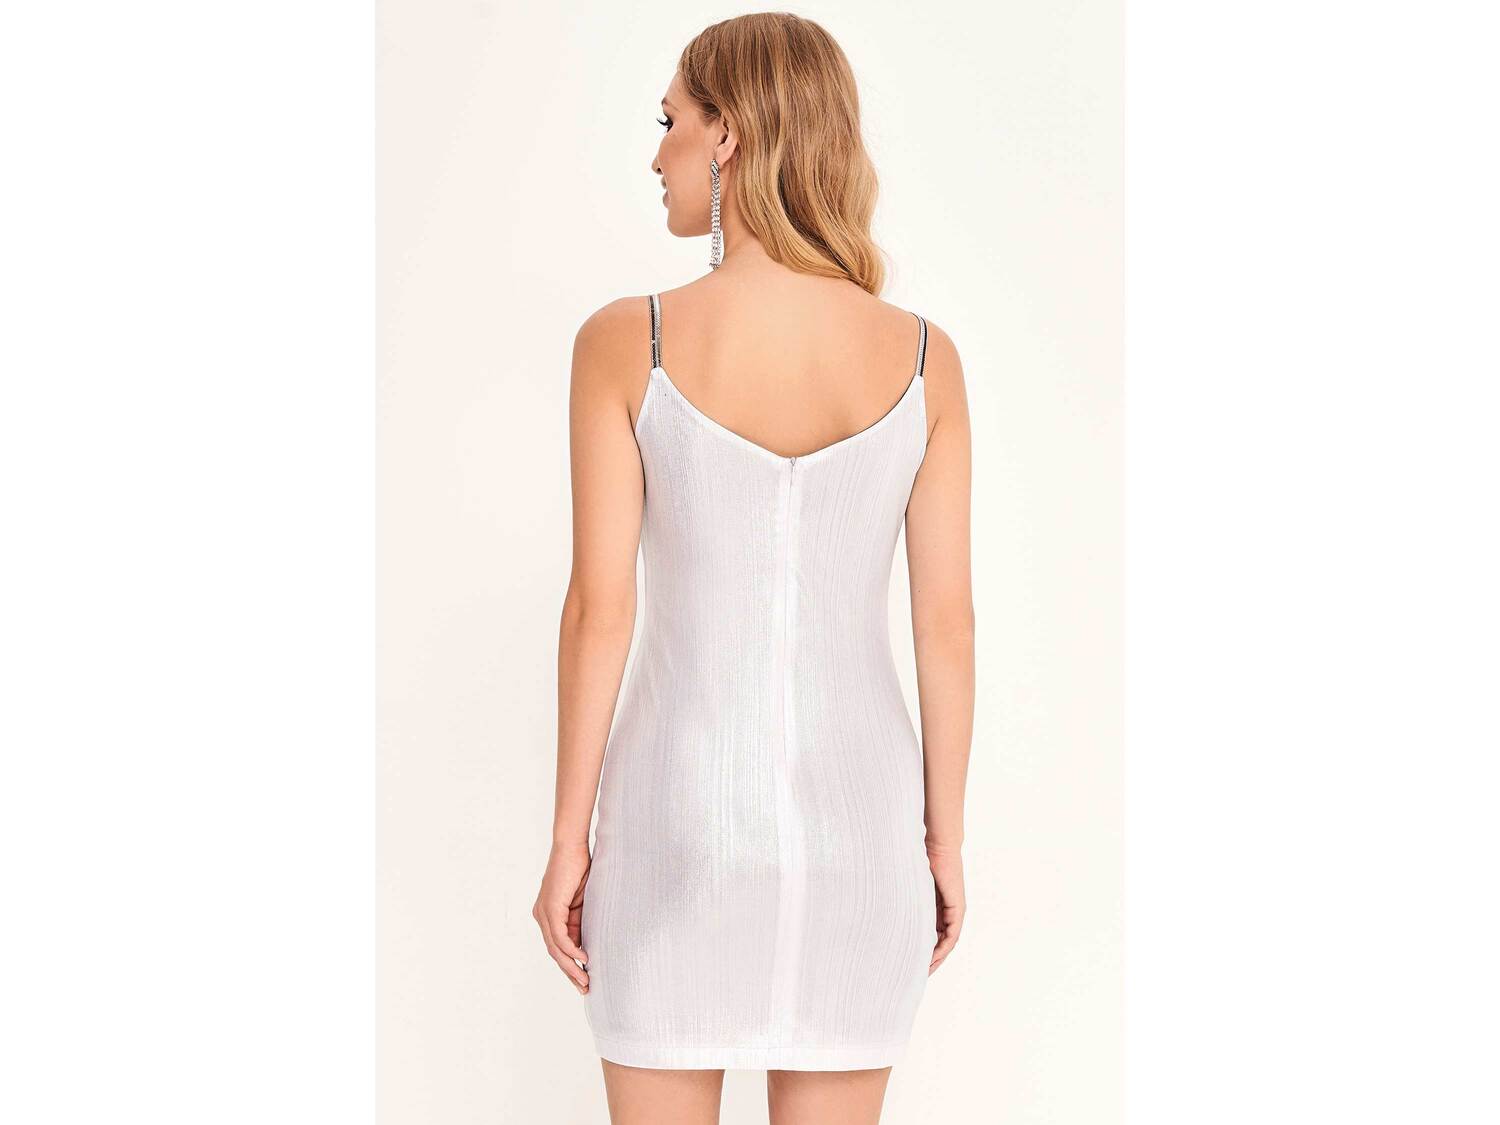 Sukienka Selena , cena 89,00 PLN 
- rozmiary: XS-L
- z błyszczącej tkaniny z ...